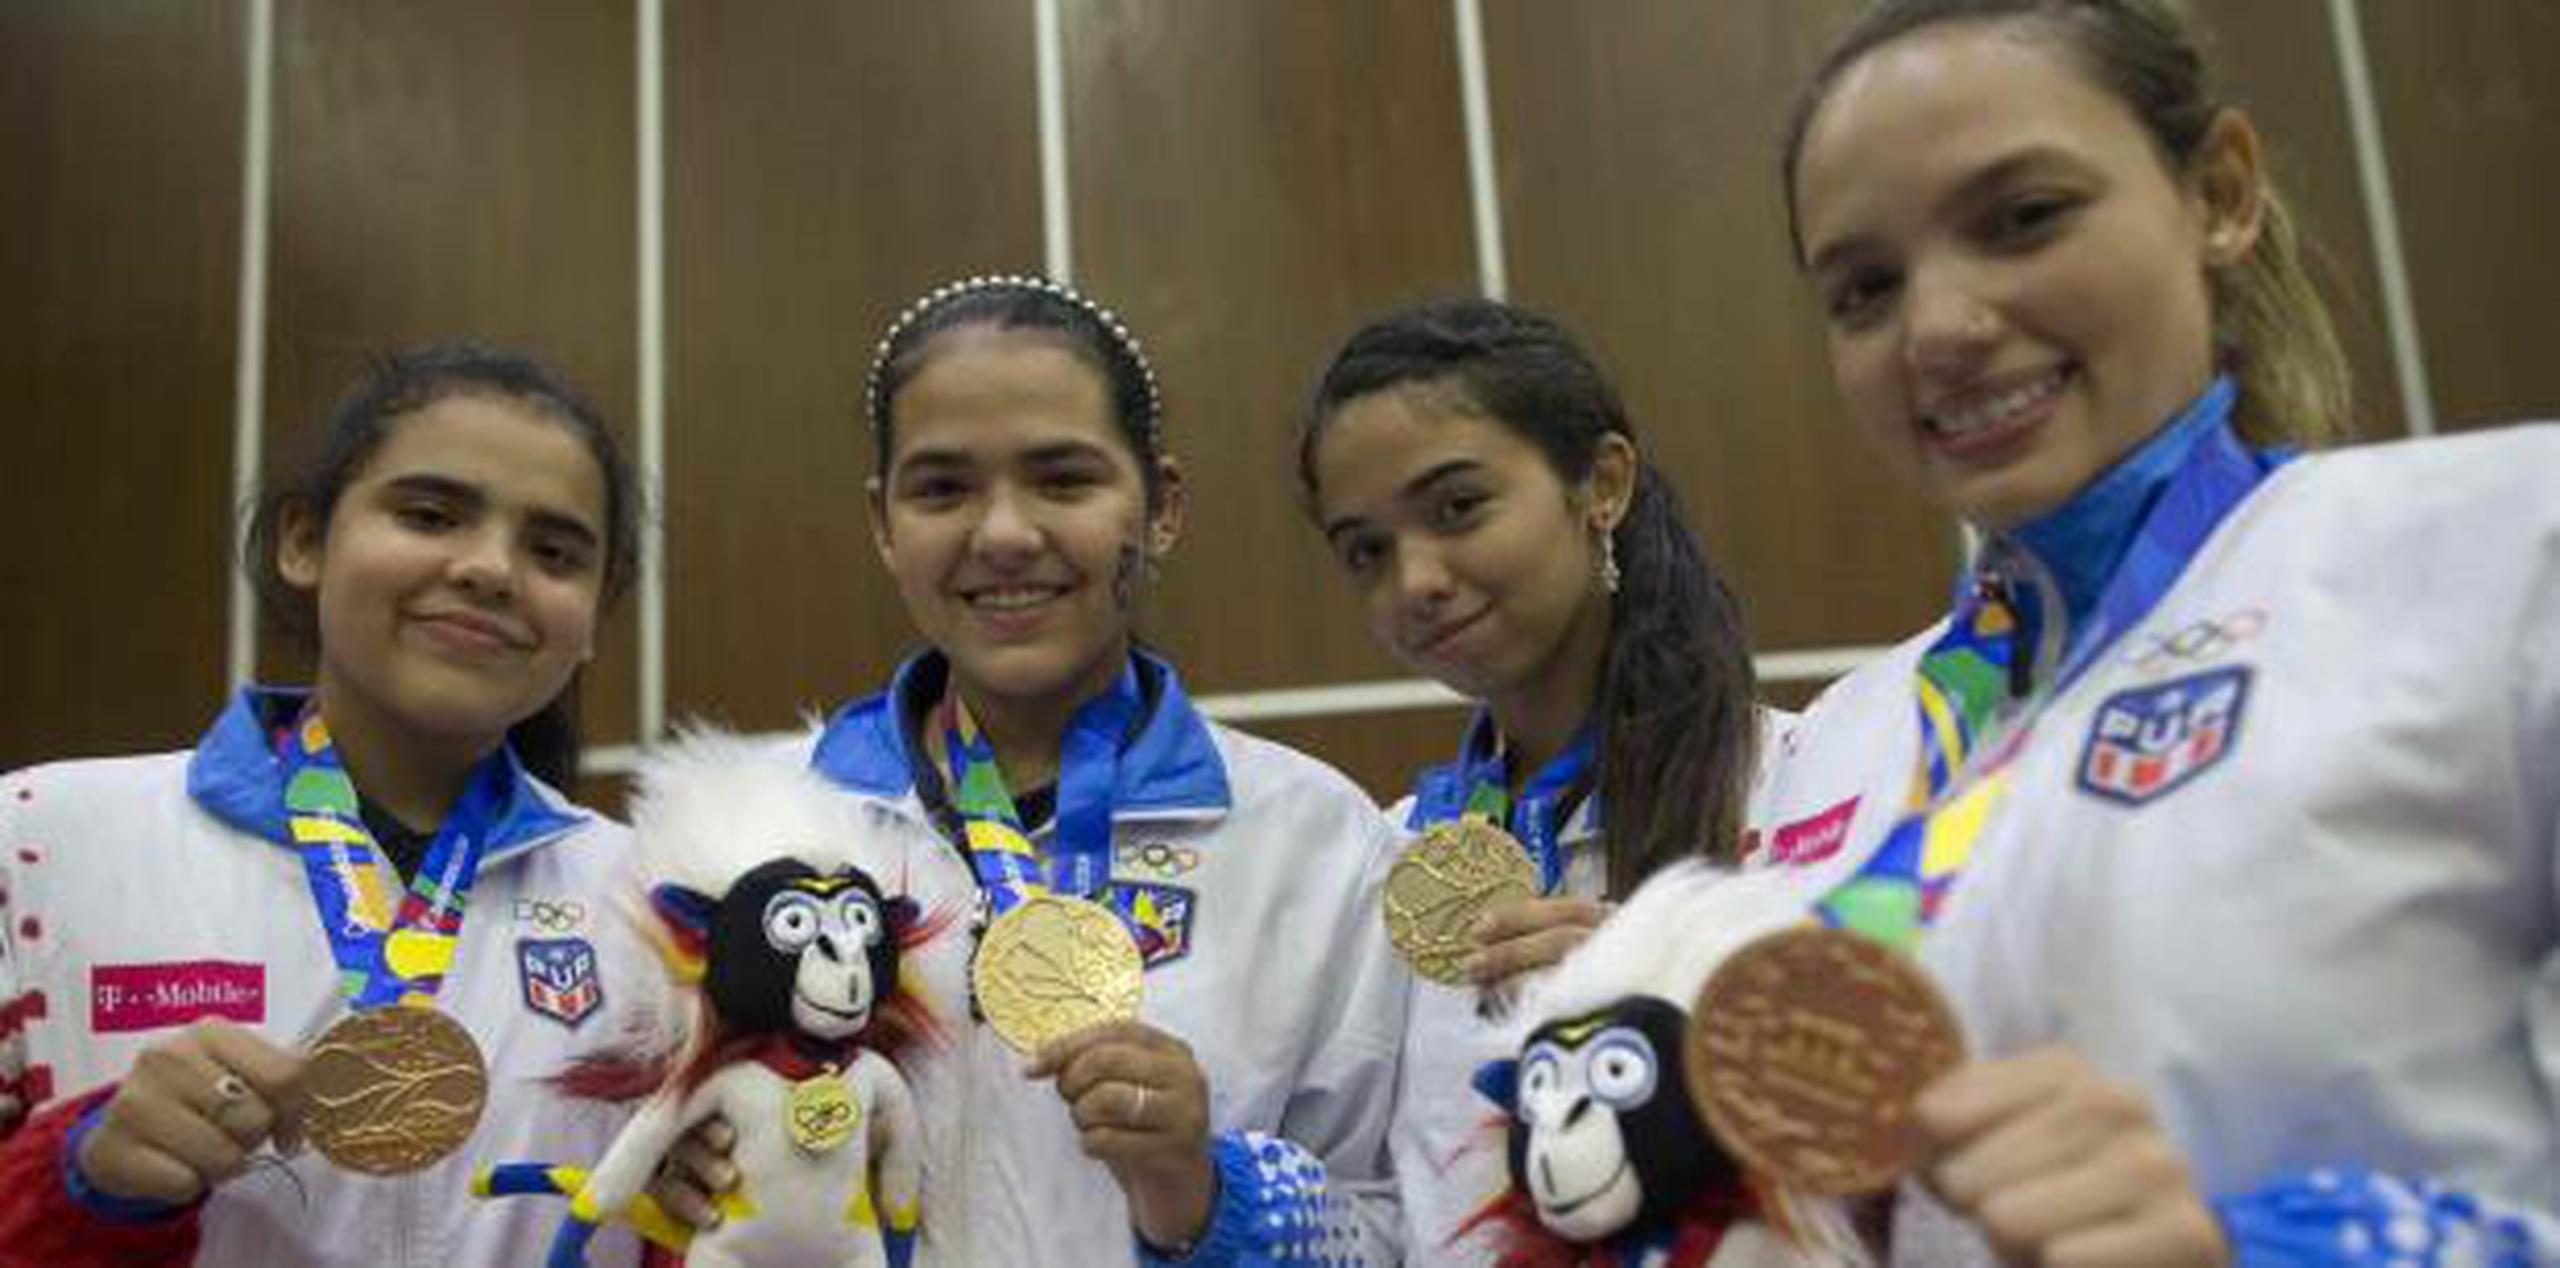 La selección de Puerto Rico de tenis de mesa celebran su medalla de oro. (Xavier Araujo | xavier.araujo@gfrmedia.com)